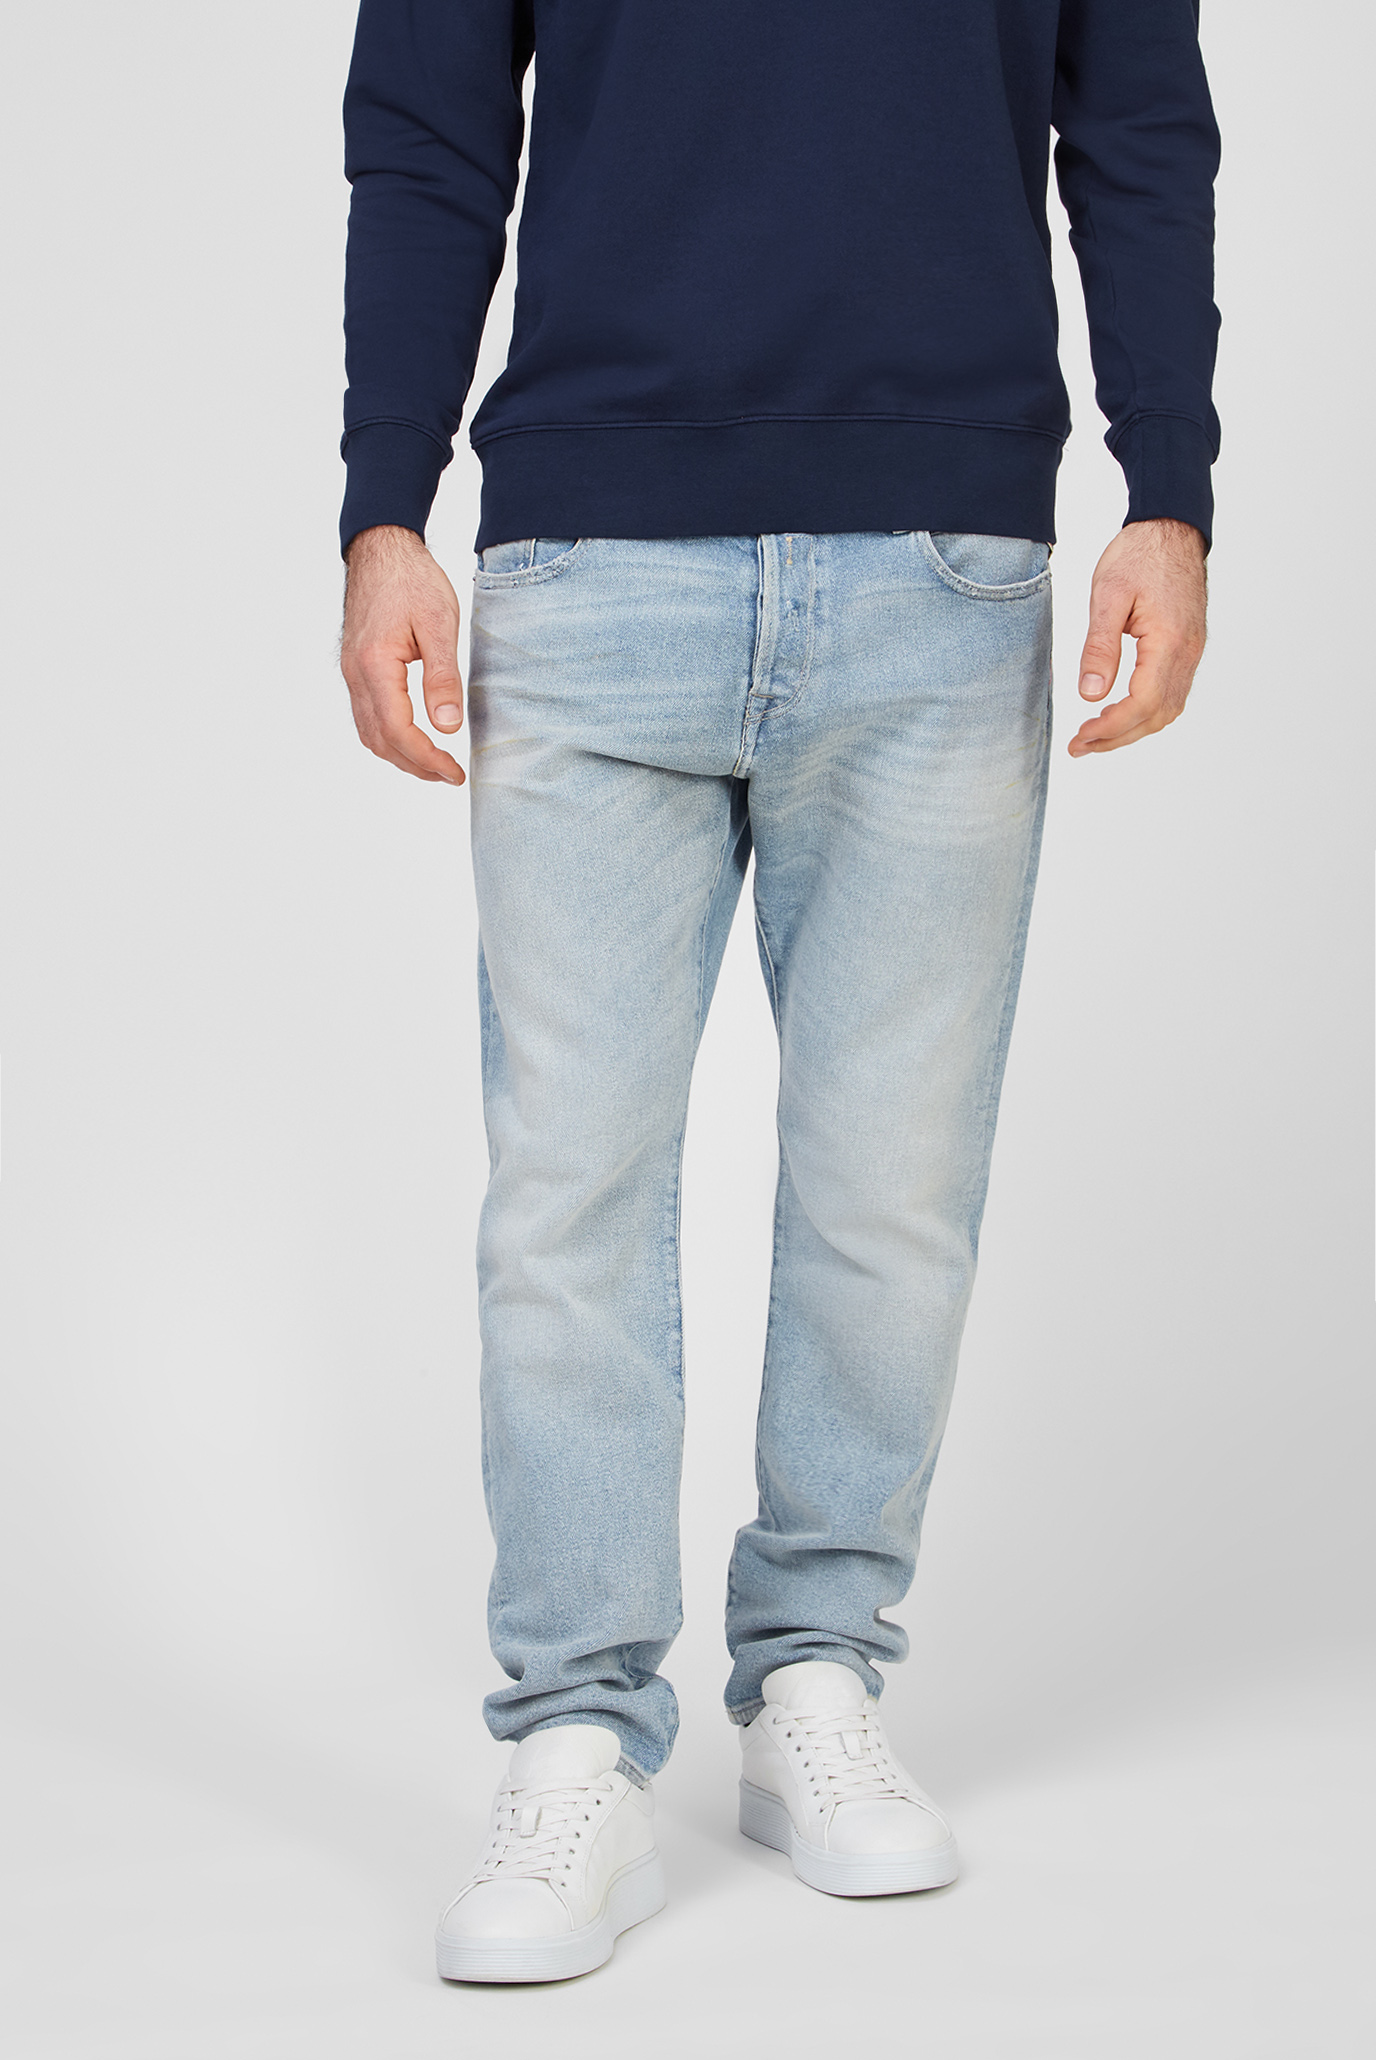 Мужские голубые джинсы Tinmar 1